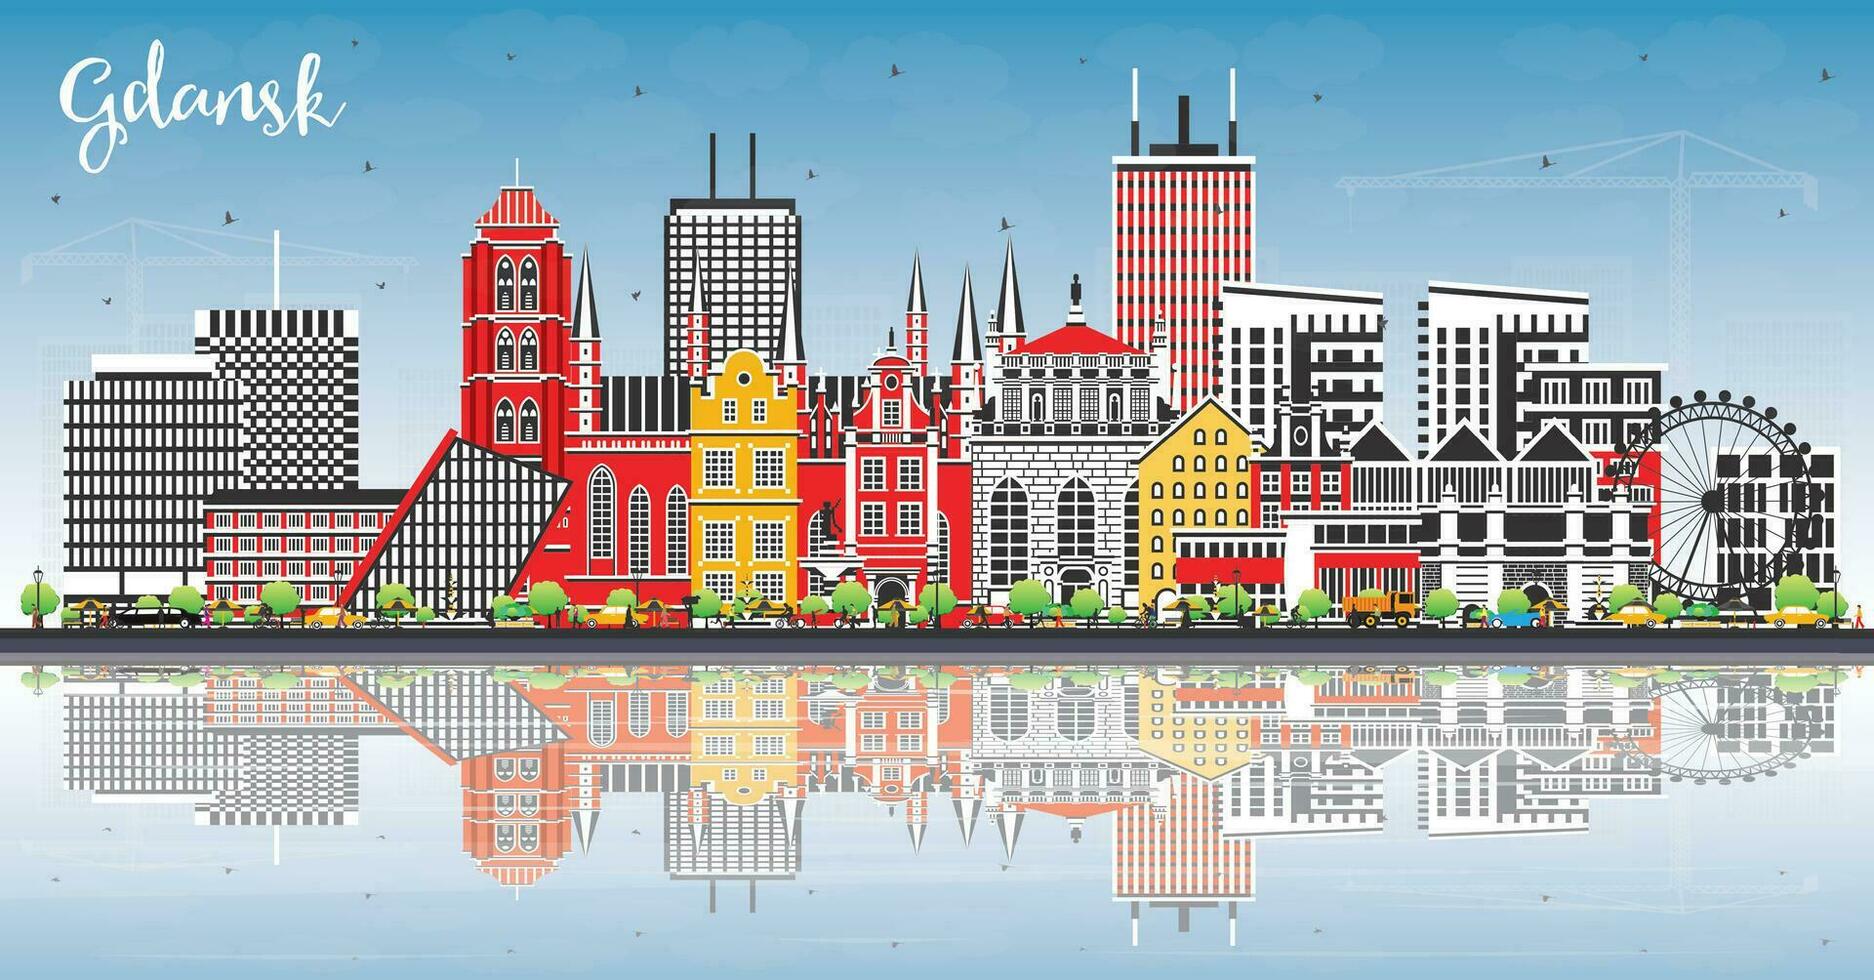 gdansk polen stad horisont med Färg byggnader, blå himmel och reflektioner. gdansk stadsbild med landmärken. resa och turism begrepp med modern och historisk arkitektur. vektor